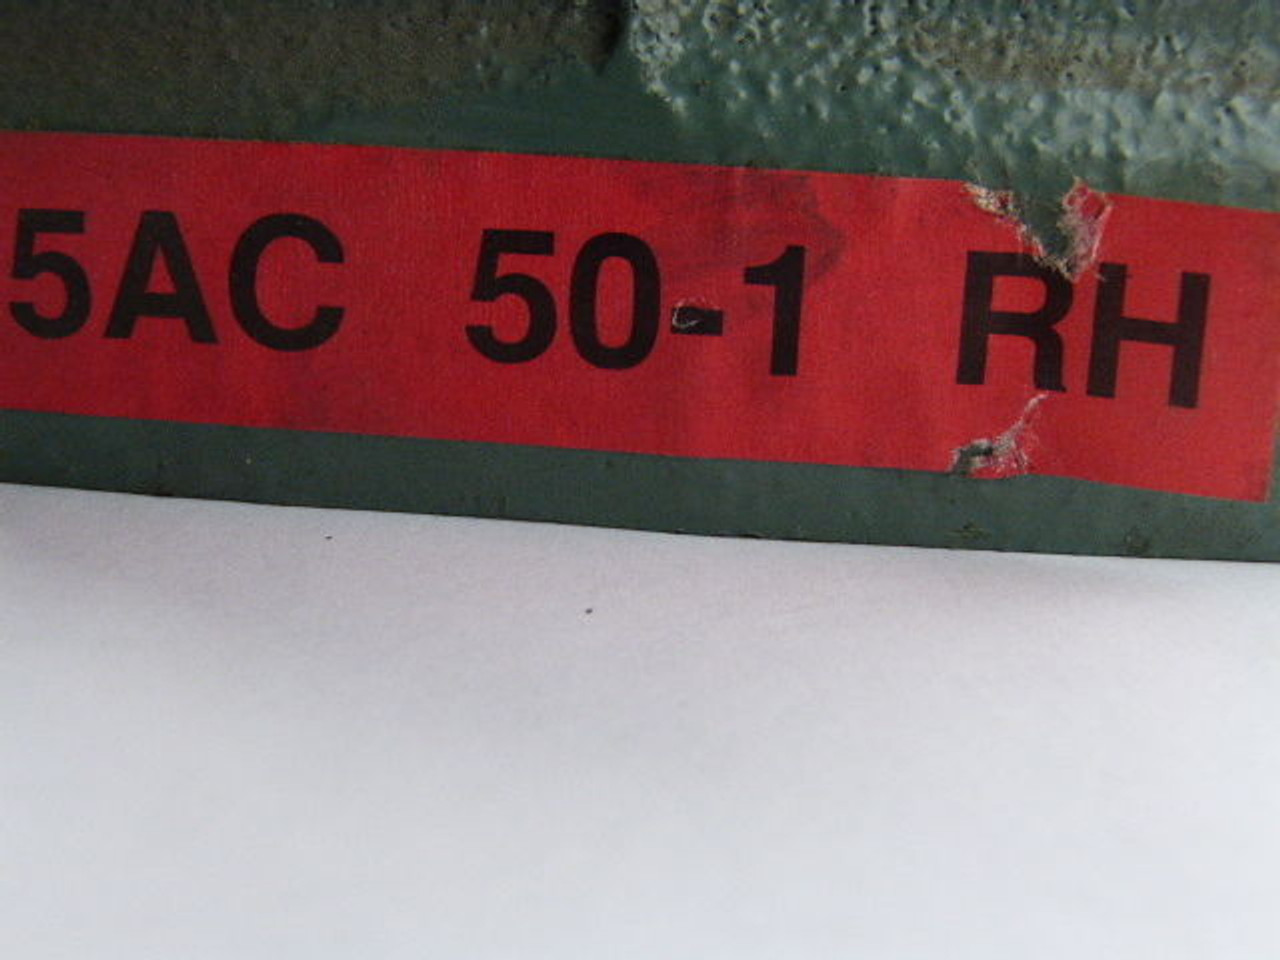 Hytrol 5AC-50-1-RH Right Hand Gear Reducer 50:1 Ratio USED